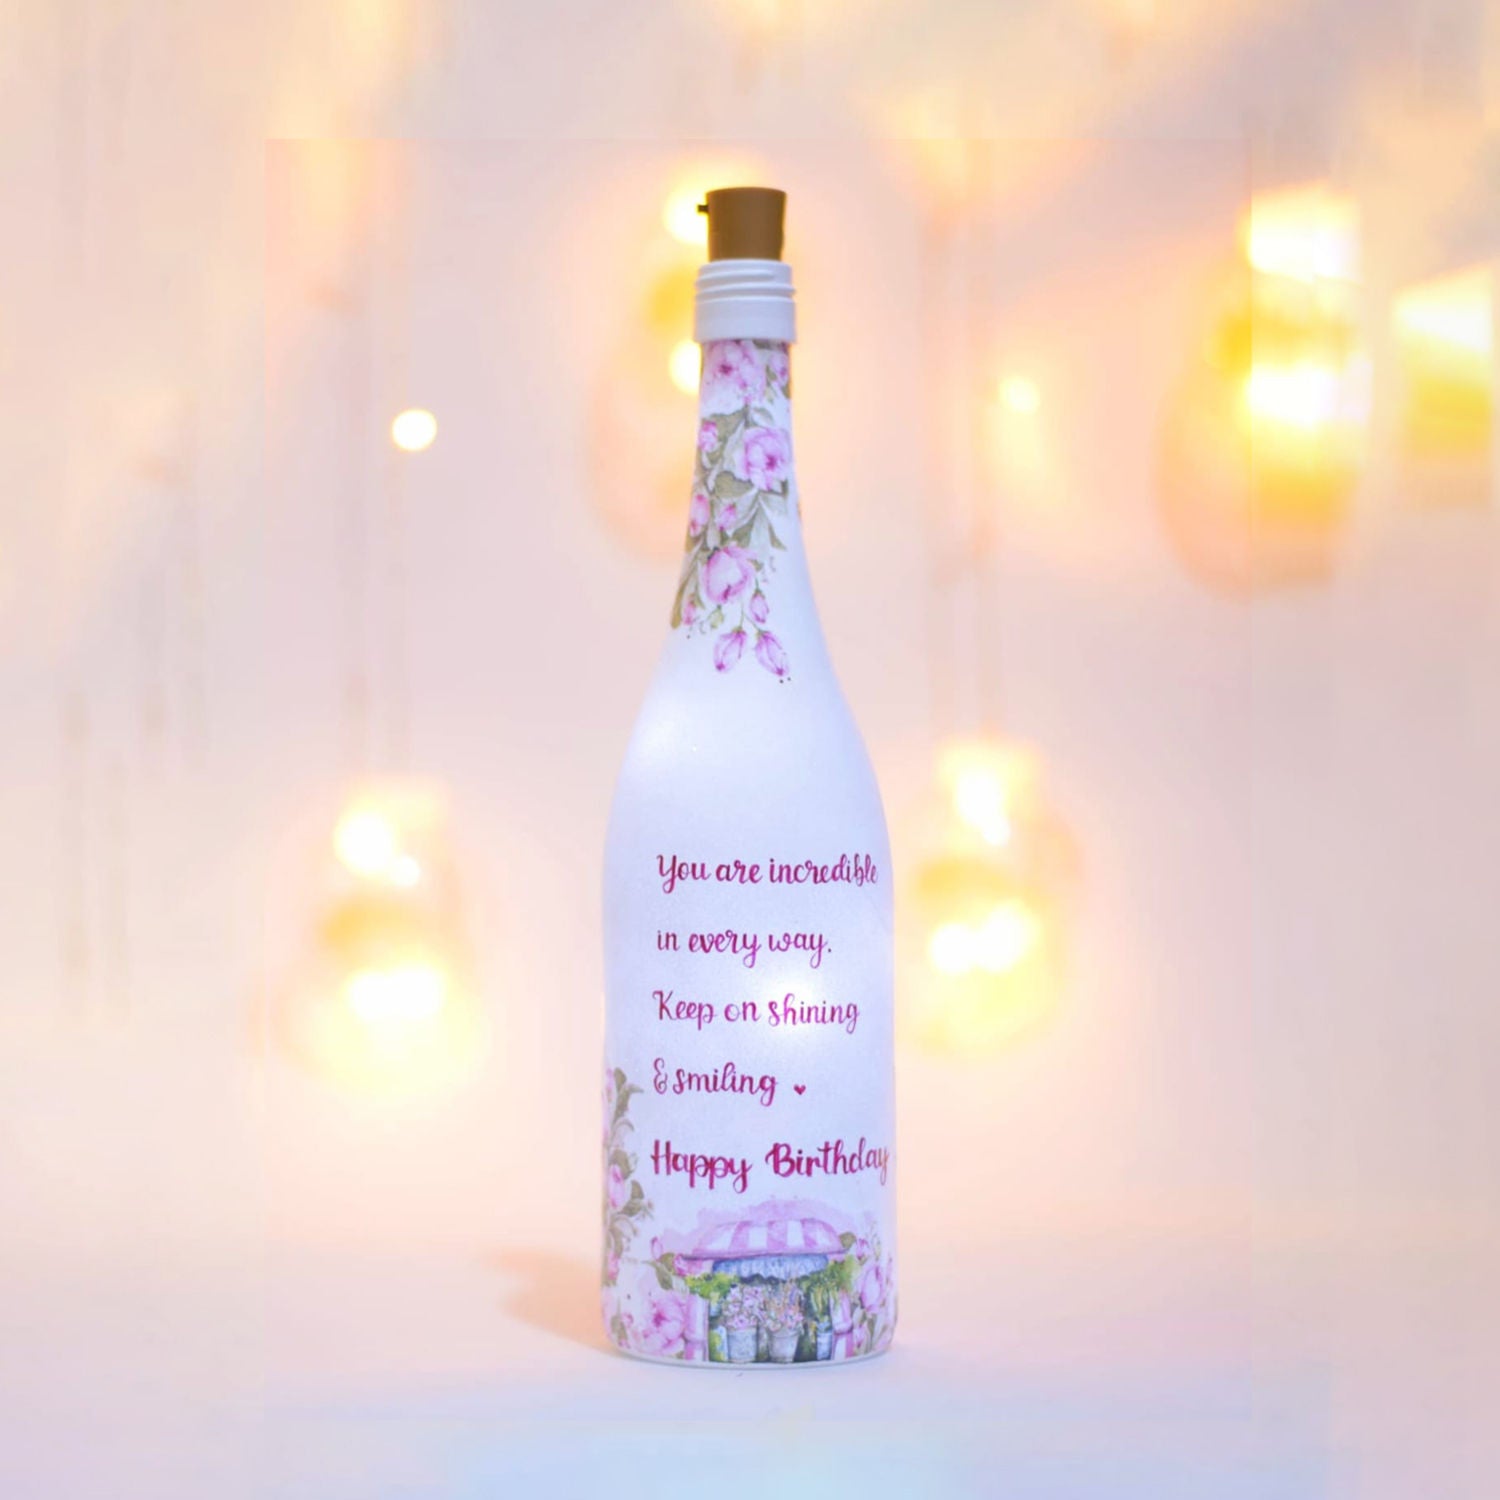 هدية عيد ميلاد - زجاجة مياه مصنوعة بطلاء يدوي مميزة